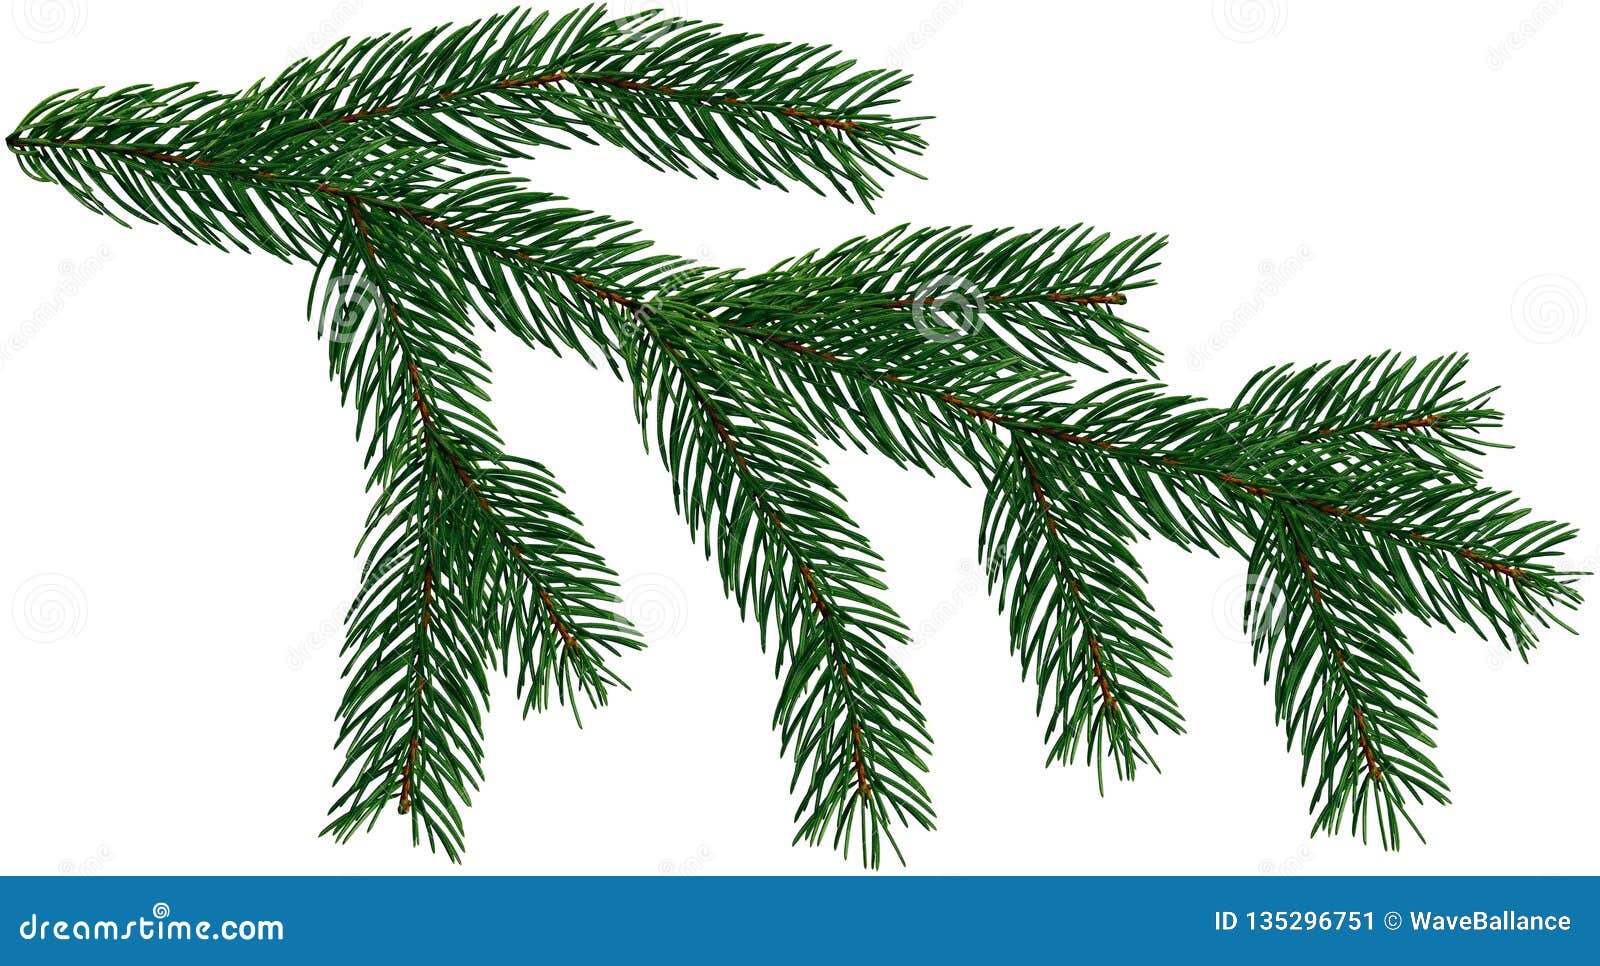 Giáng sinh đang đến rất gần và cây thông Giáng sinh là biểu tượng của mùa đông. Nếu bạn đang tìm kiếm một cây thông đẹp để trang trí cho mùa Giáng sinh sắp tới, hãy tham khảo hình ảnh liên quan đến từ khóa \